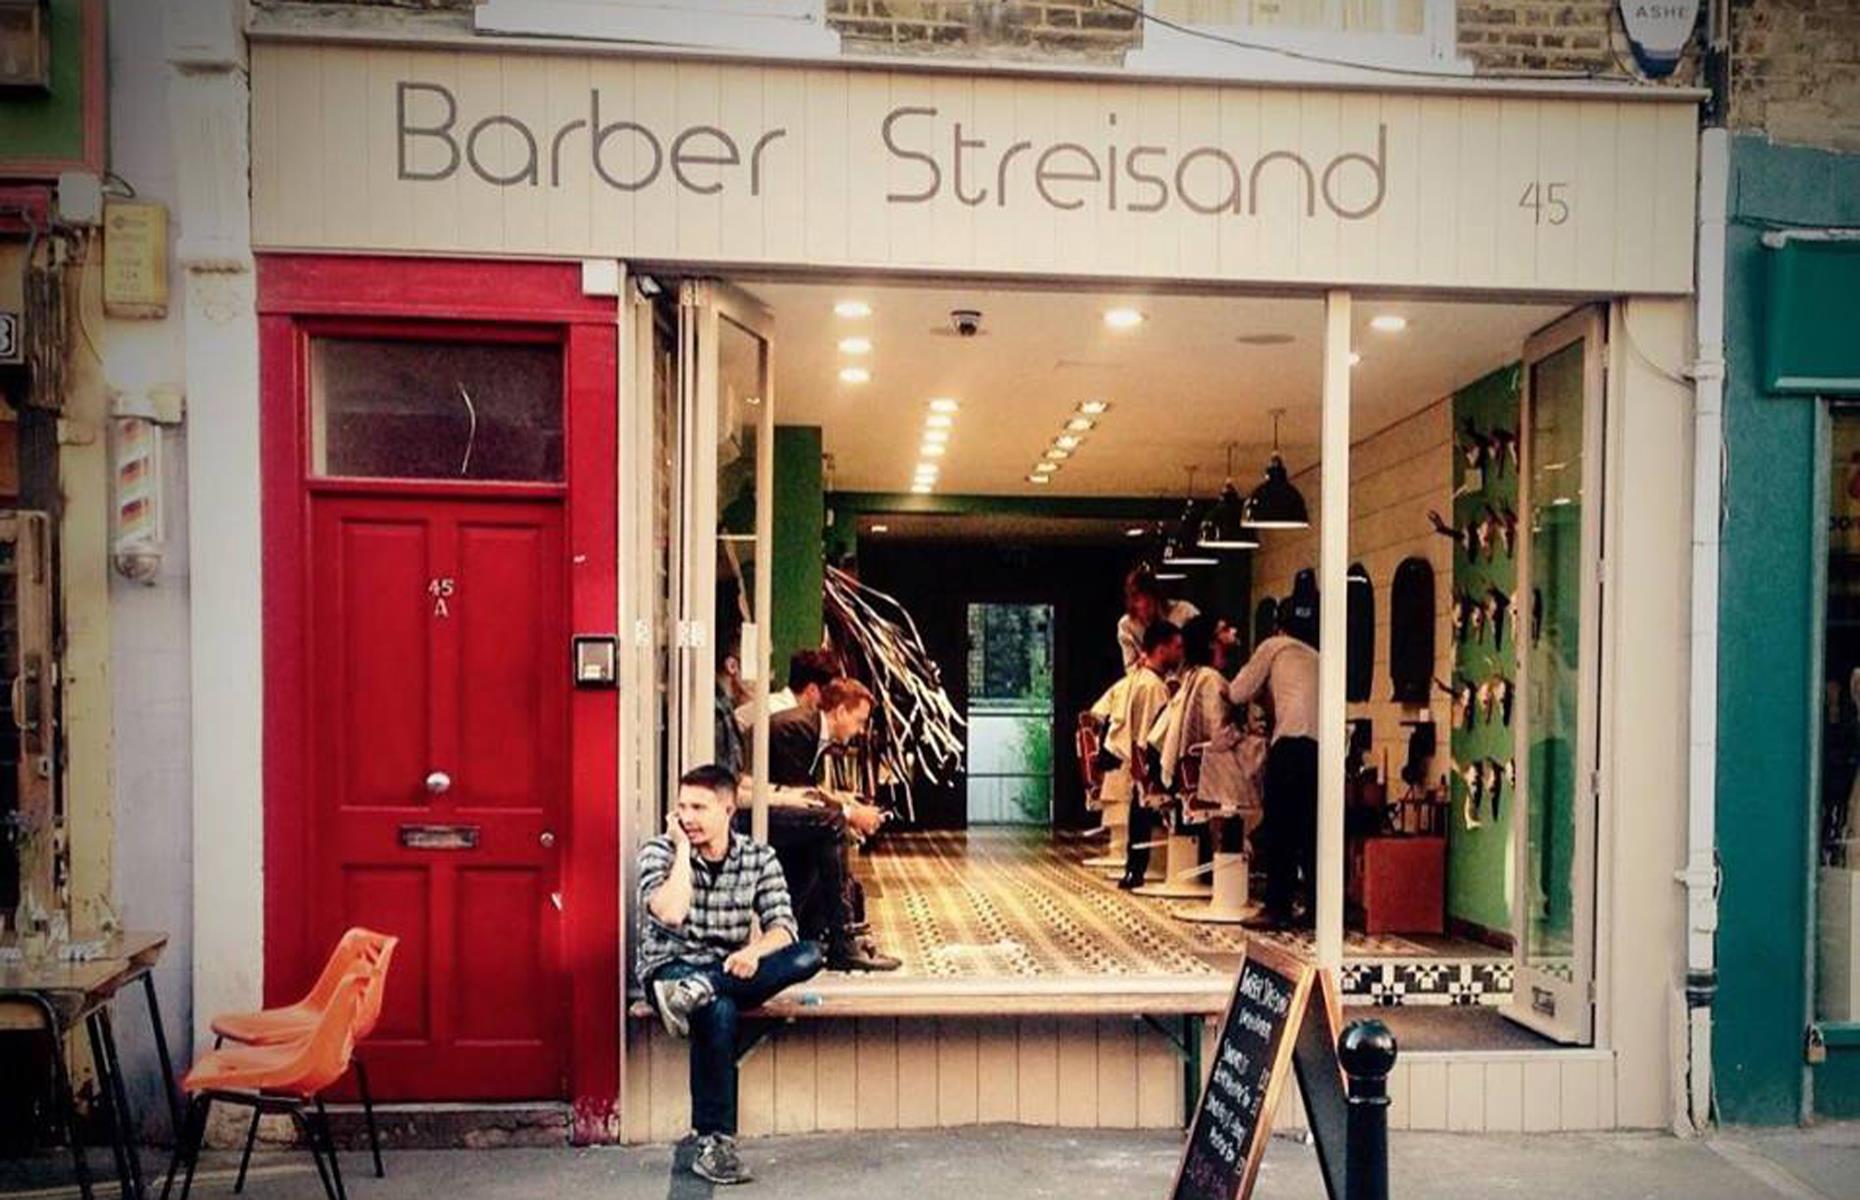 Barber Streisand, London, UK